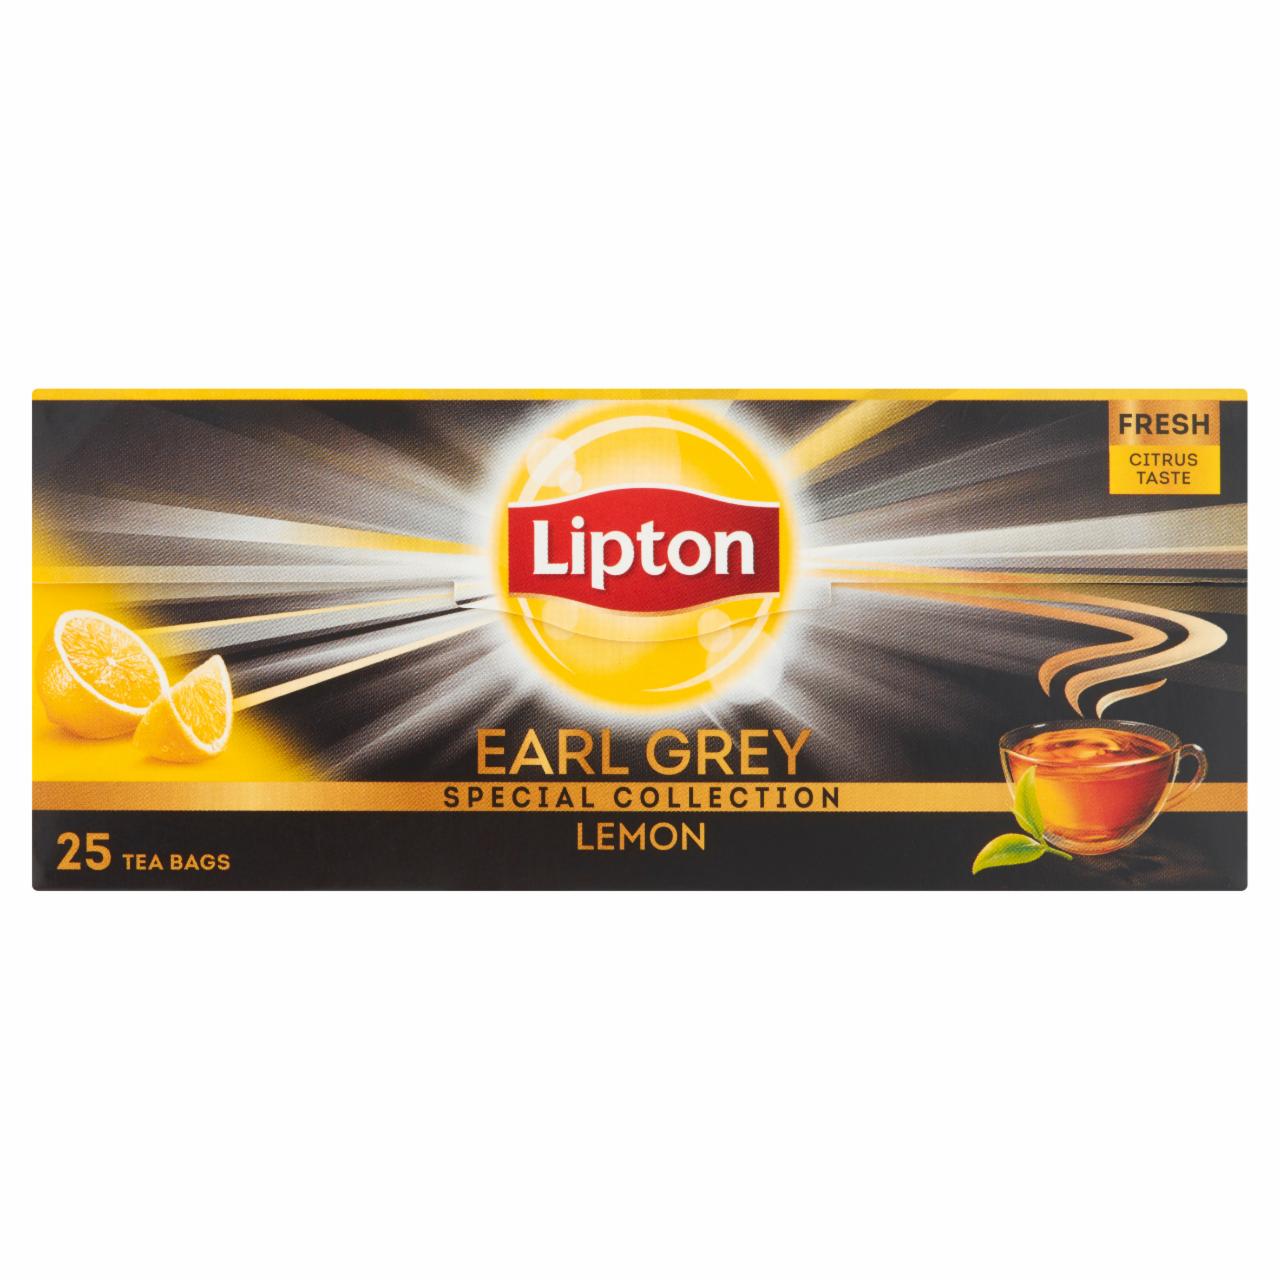 Zdjęcia - Lipton Earl Grey Lemon Herbata czarna 50 g (25 torebek)